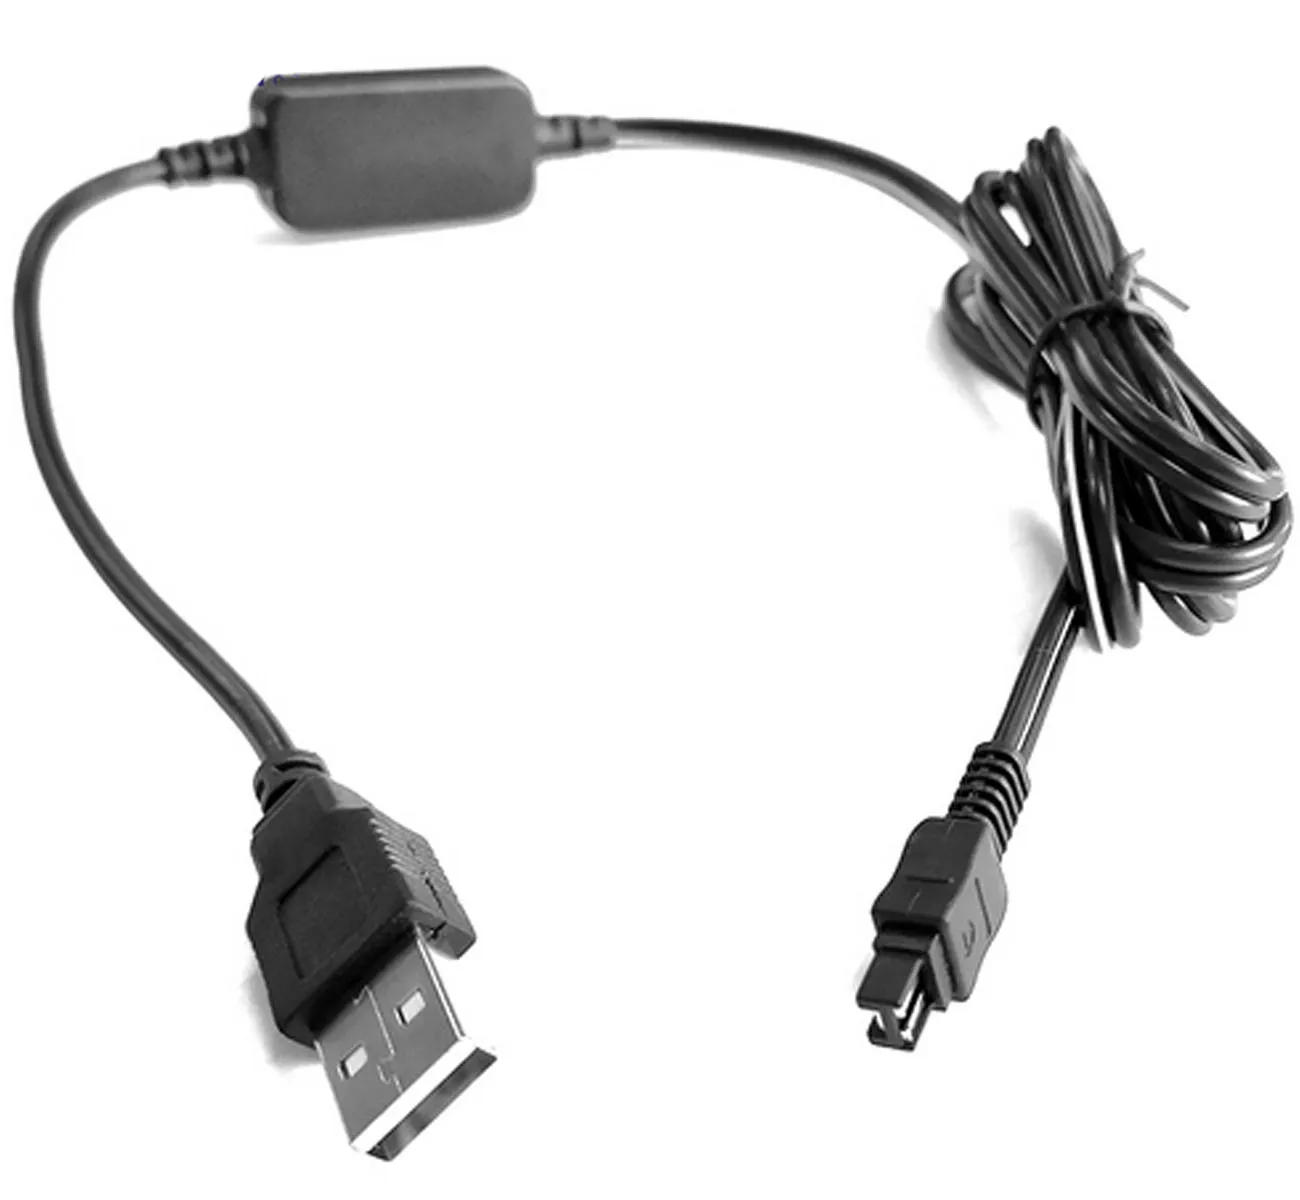 USB Мощность адаптер Зарядное устройство для sony DCR-SR38, DCR-SR48, DCR-SR58, DCR-SR68, DCR-SR78, DCR-SR88, DCR-SR88E Handycam